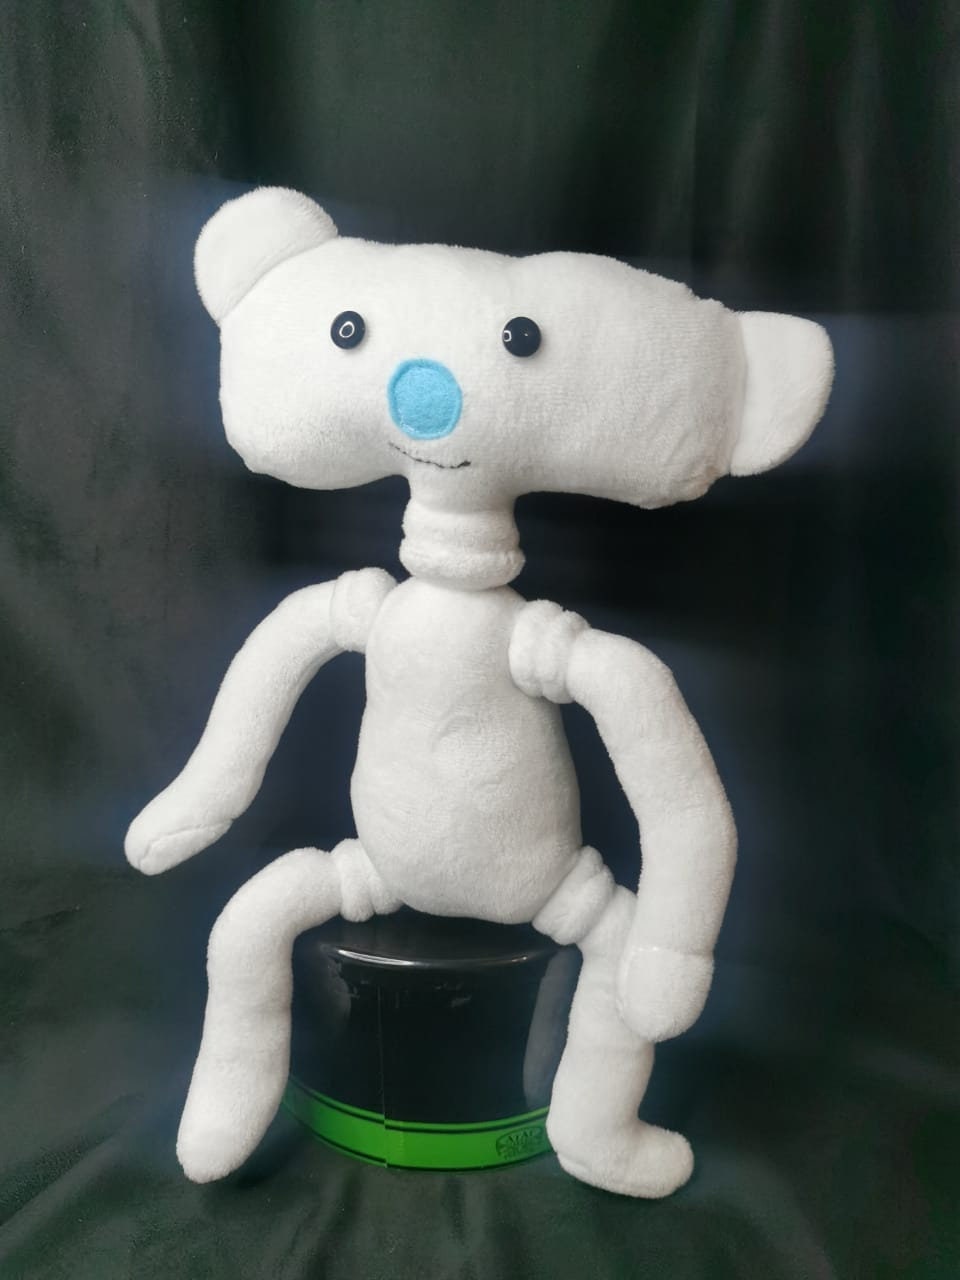 MYIASQS7 Cute White Plush Toy, Cartoon Animation Peripheral Plush